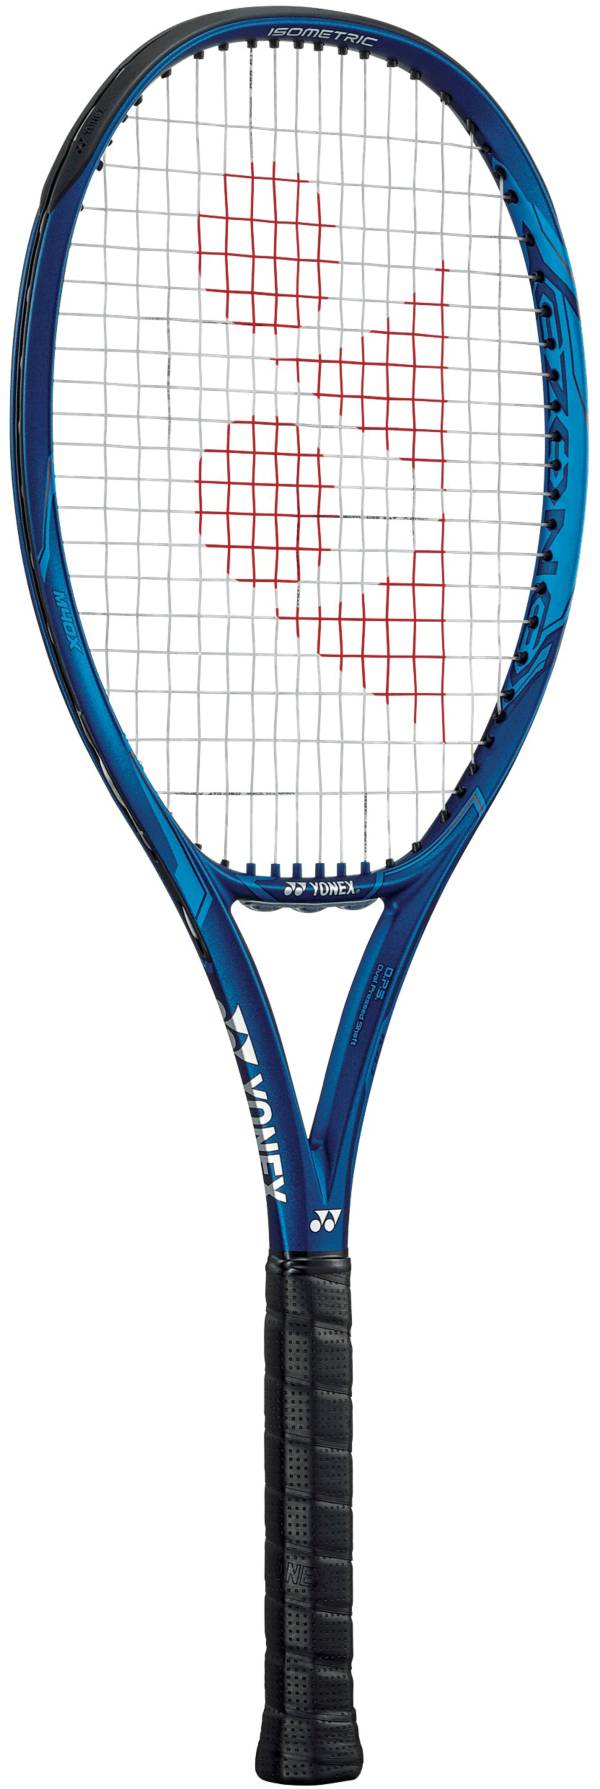 Yonex Ezone 100 Tennis Racquet product image